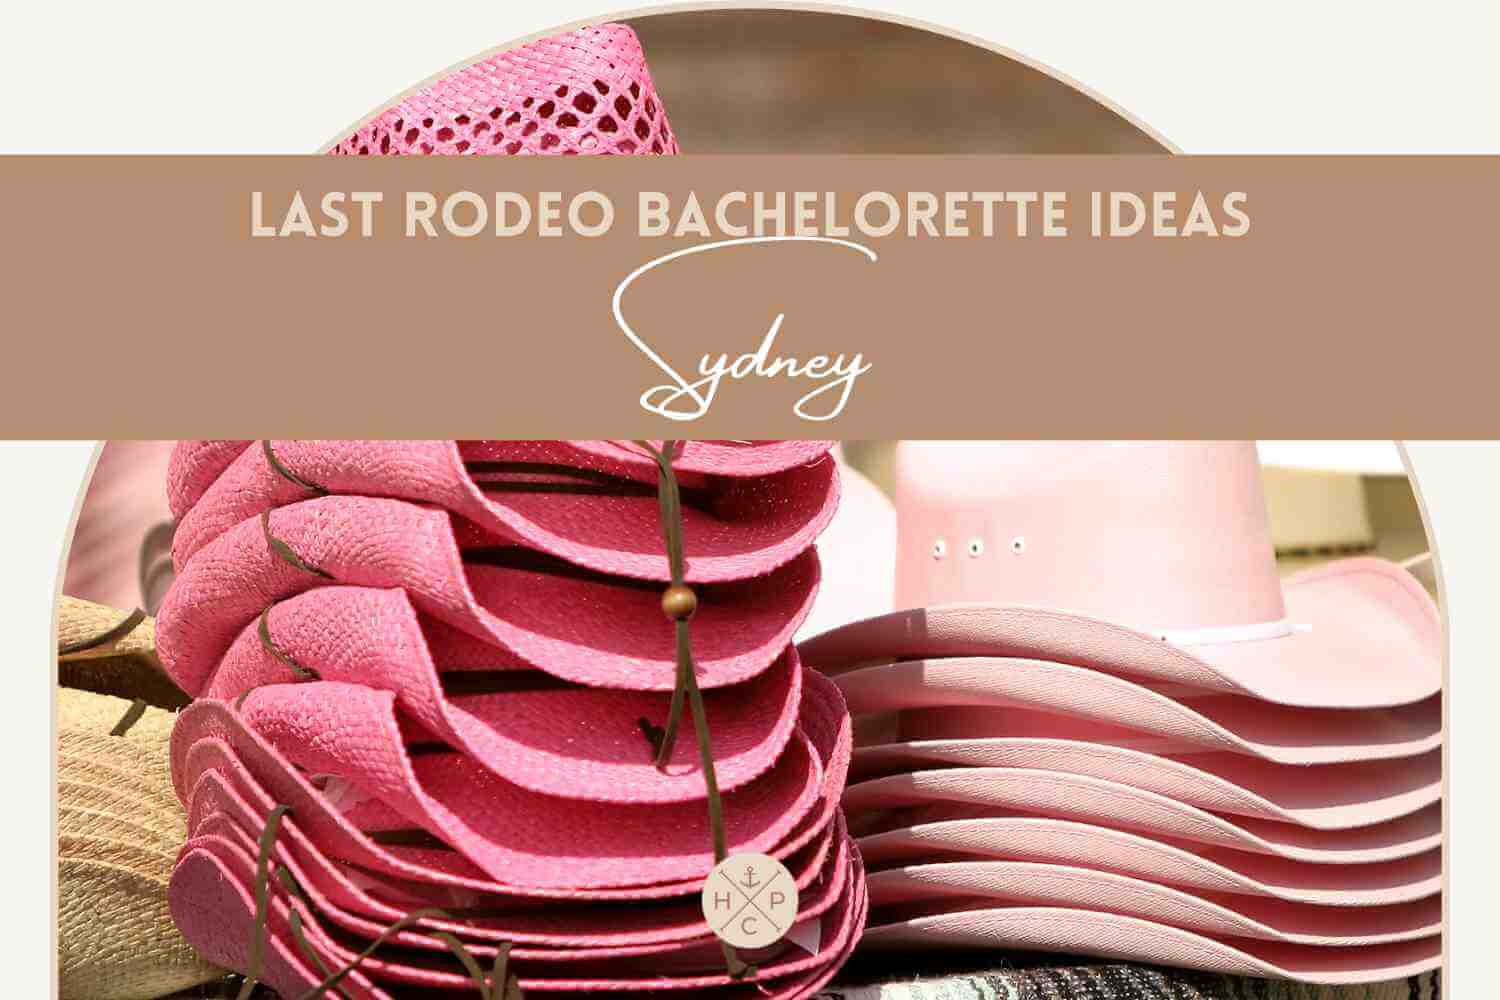 Last rodeo Bachelorette party ideas Sydney